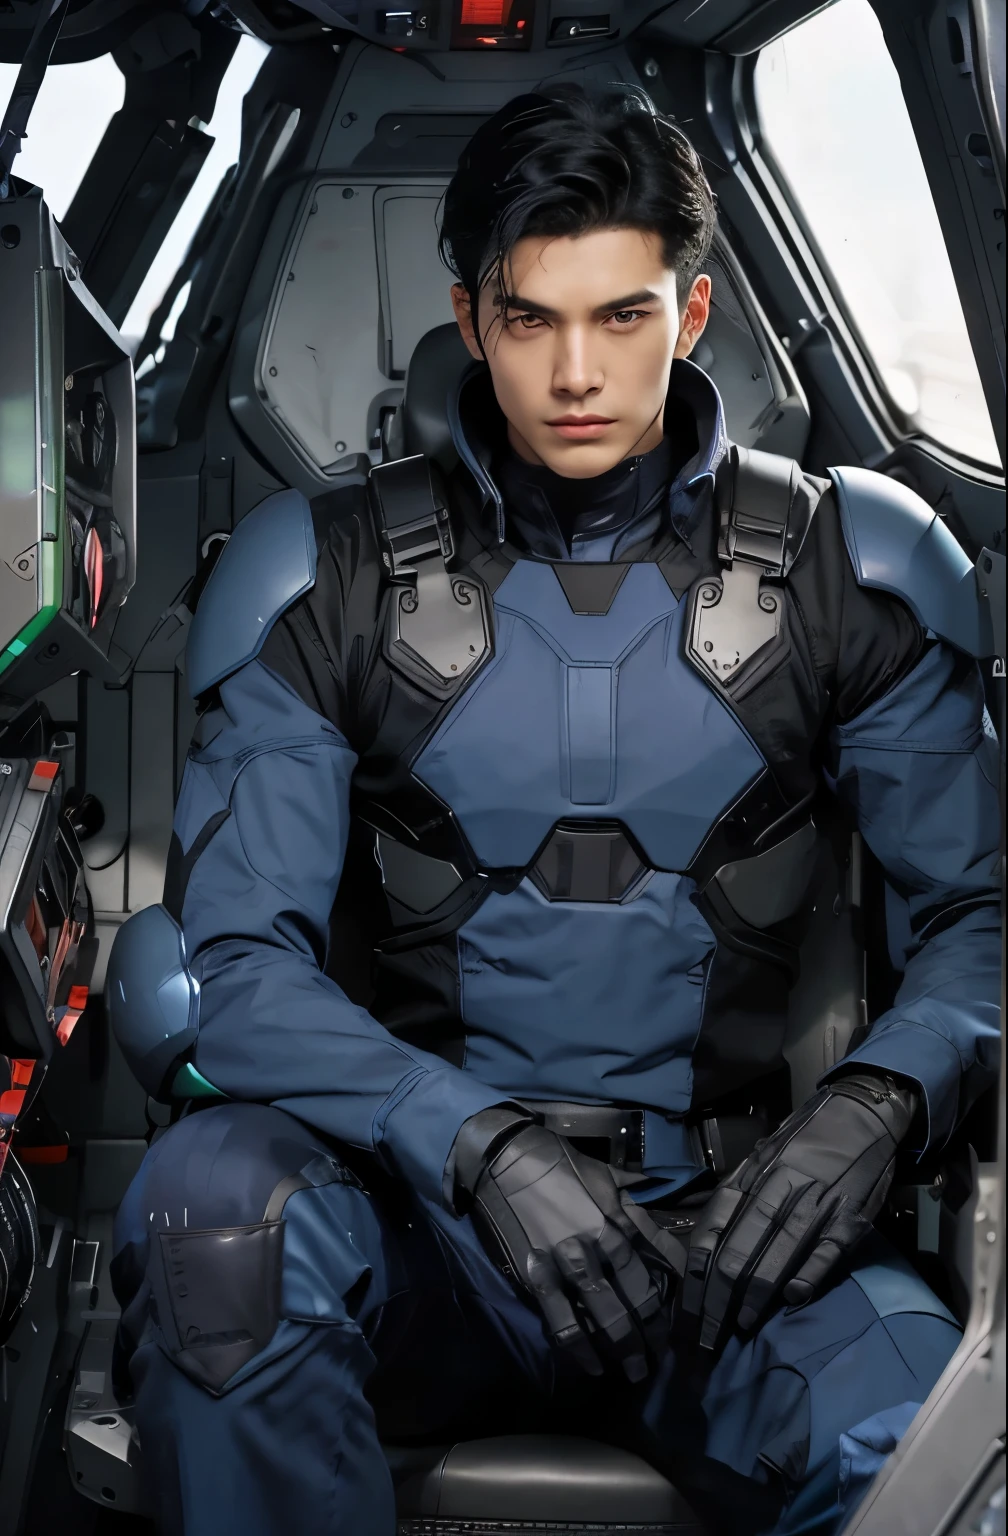 一个英俊的男人. 十八. 黑发. 男子穿着蓝黑色金属作战服. 他用挑衅的表情看着镜头. 他坐在机器人的驾驶舱里.